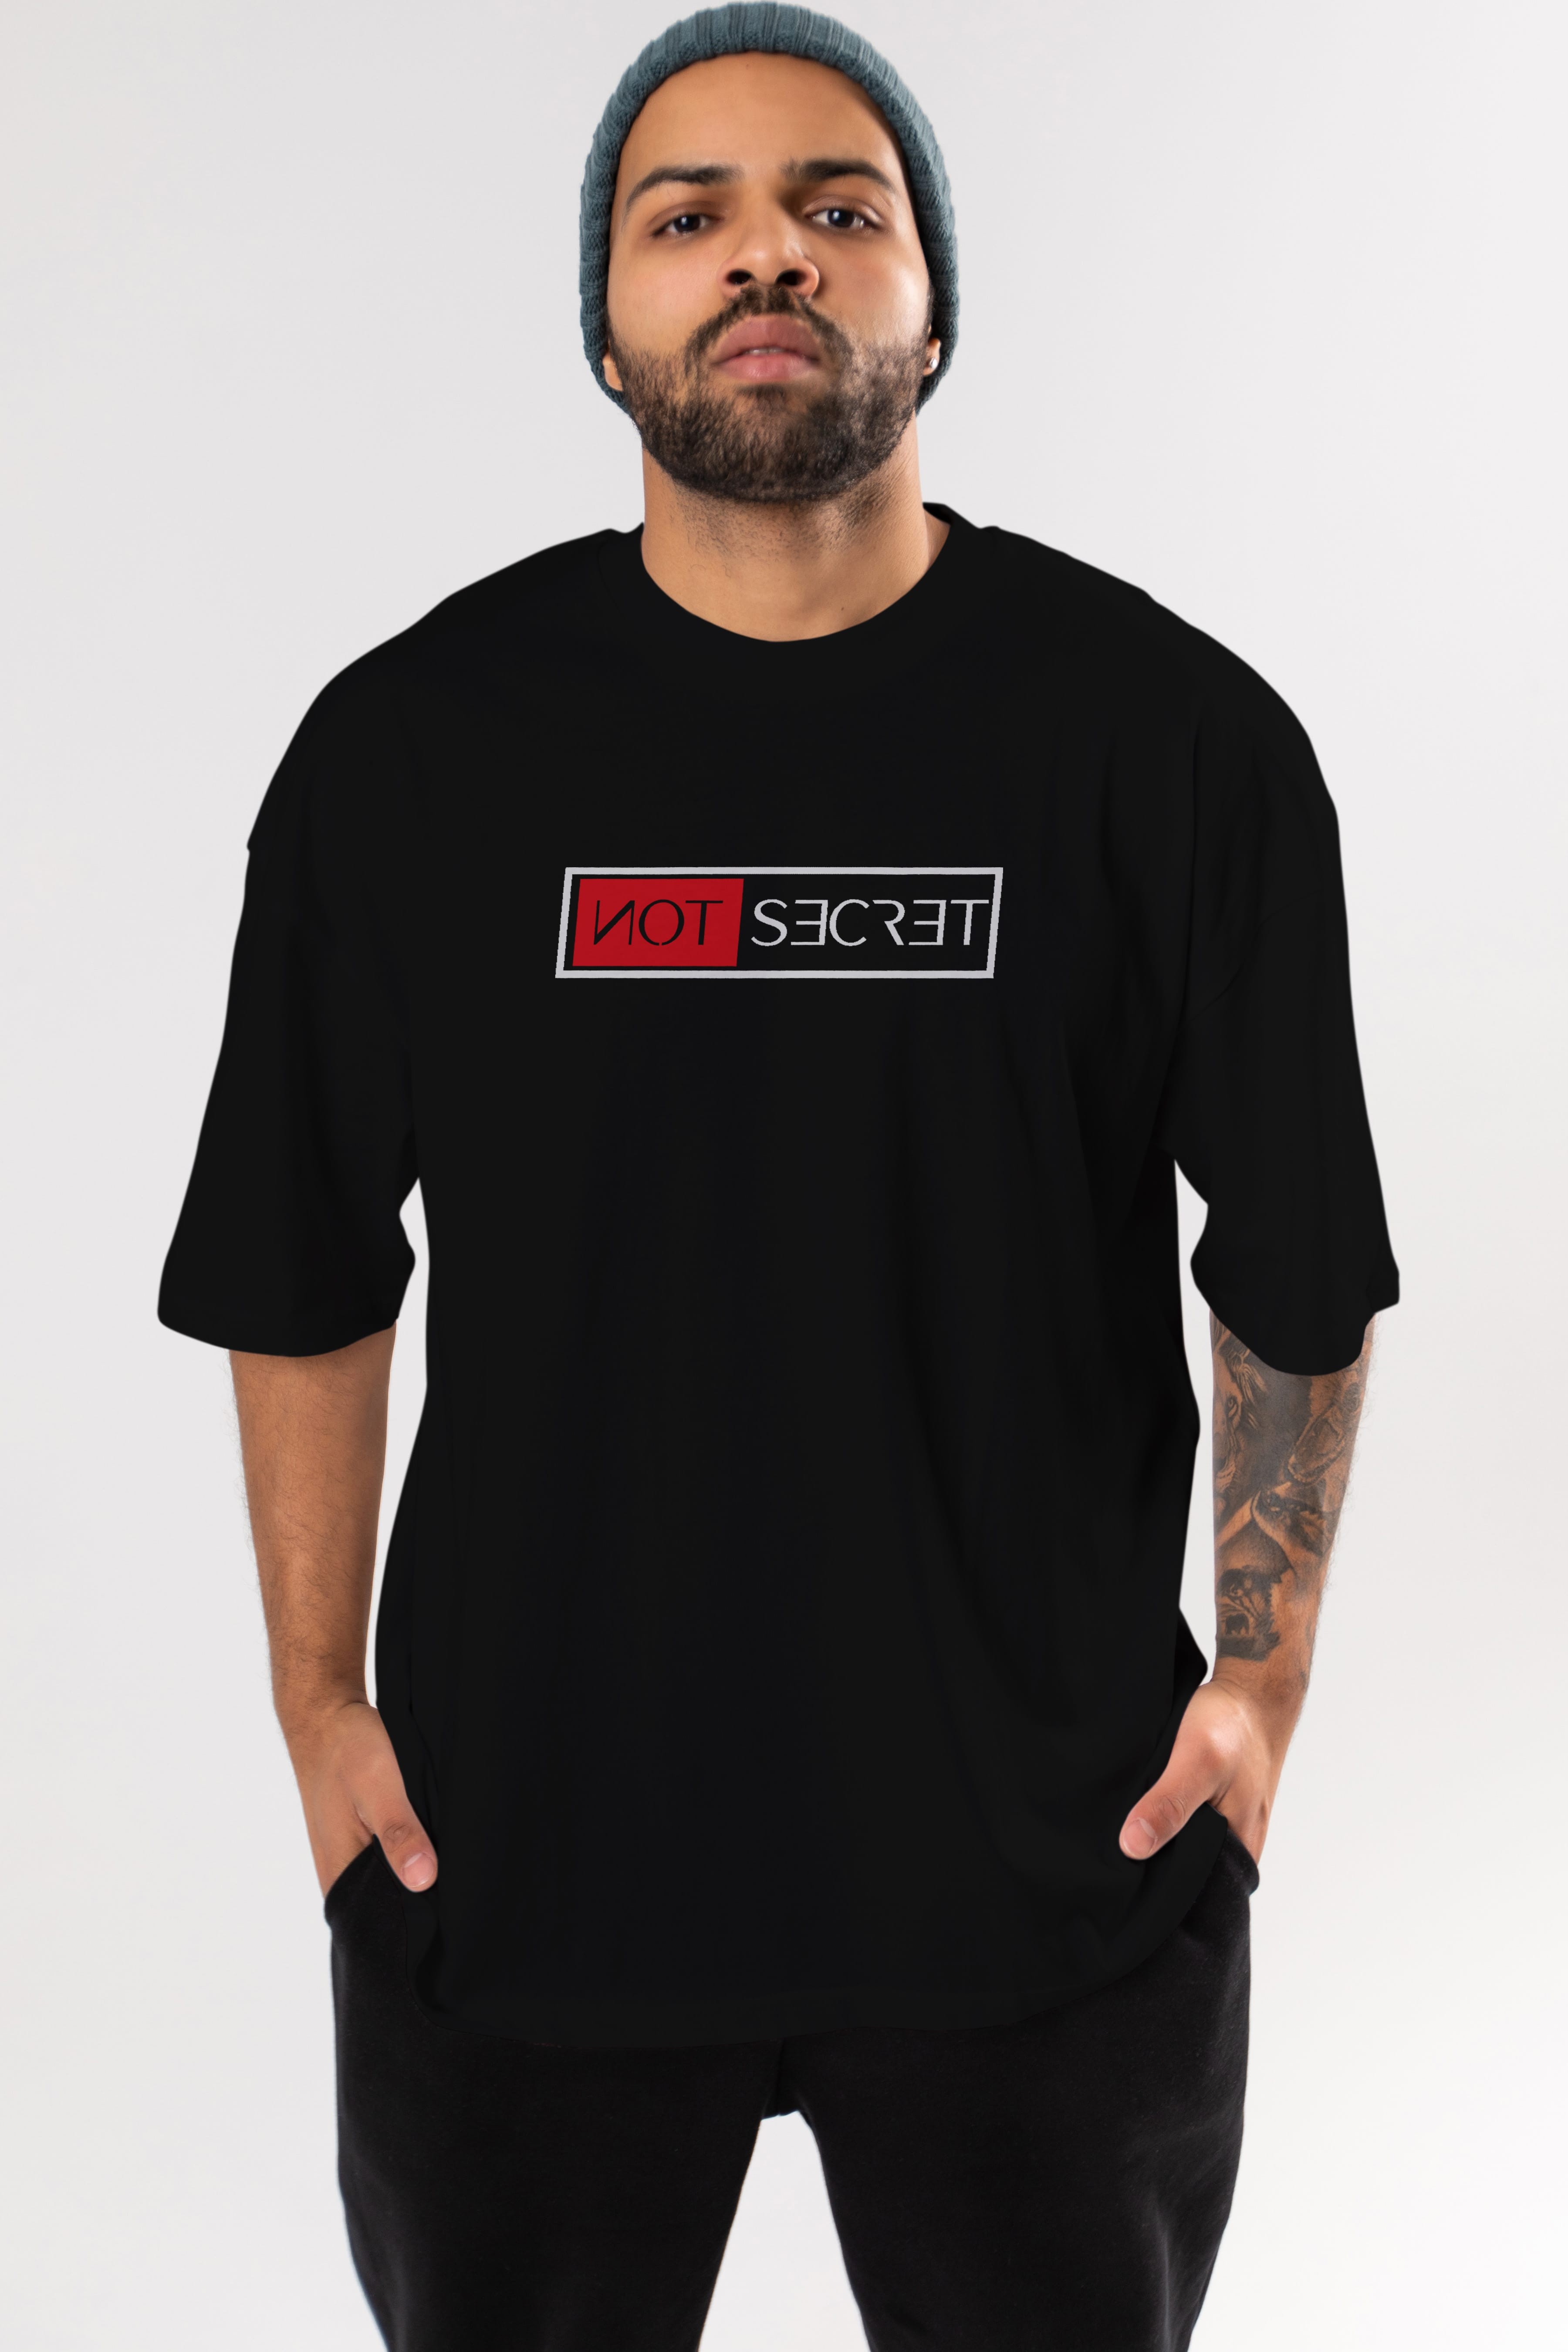 Not Secret Ön Baskılı Oversize t-shirt %100 pamuk Erkek Kadın Unisex